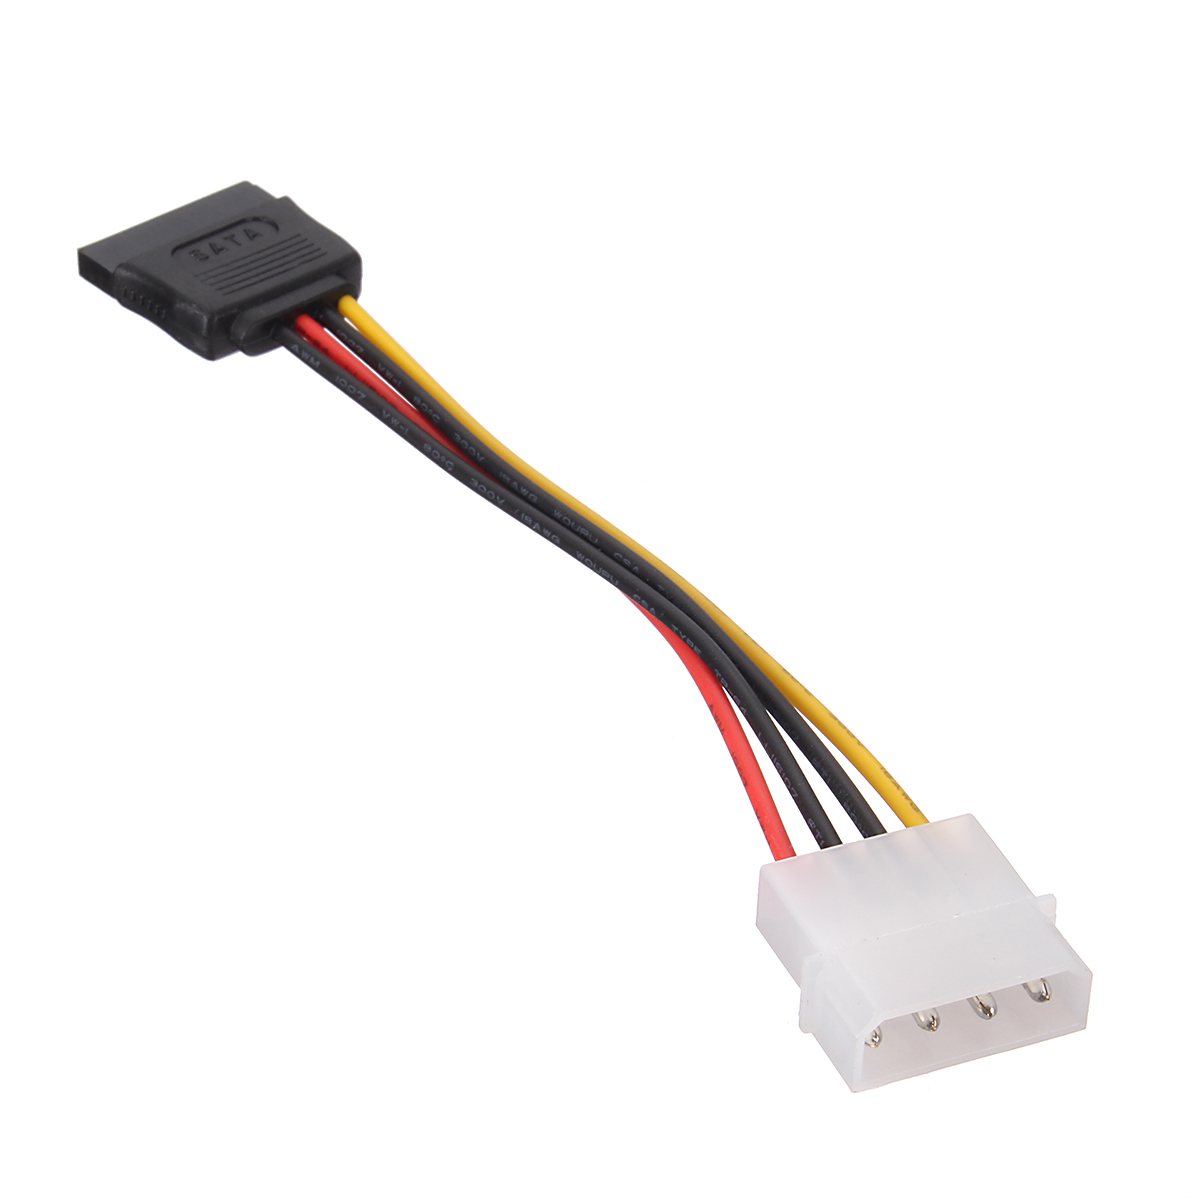 1x-SATA-15-Pin-Female-to-Molex-IDE-4-Pin-Male-Power-Cable-1317652